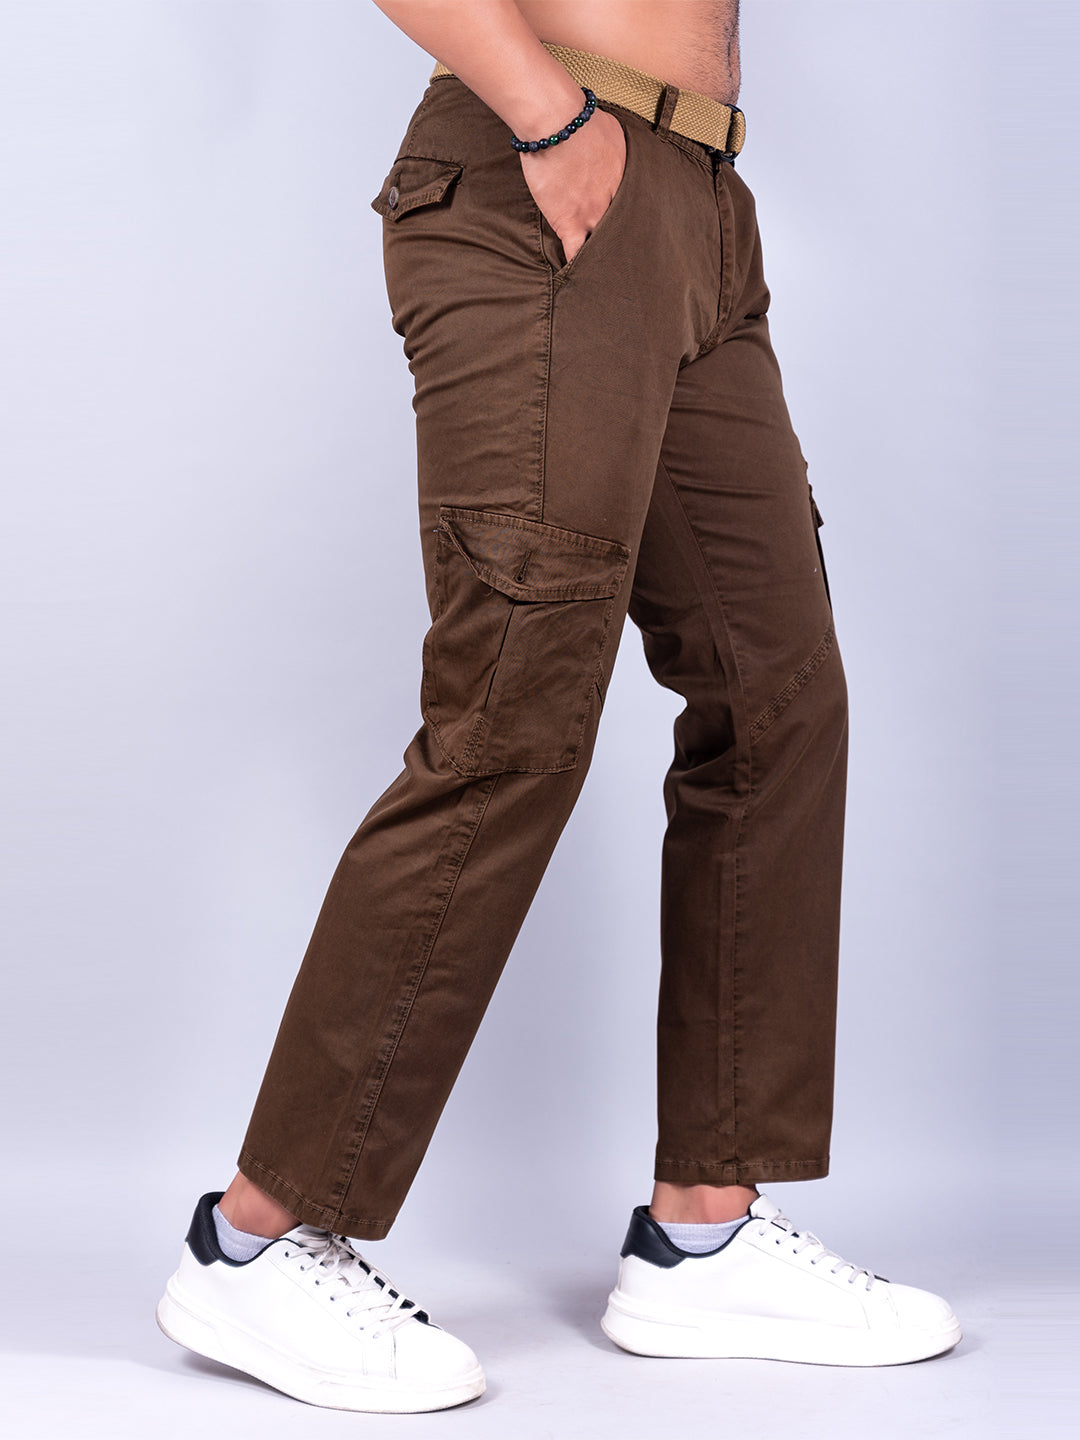 Six Pocket Pants (Part 6) 100 KG | 215 Pcs | Korean 9876164942 #cargo  #joggers #sixpocket - YouTube